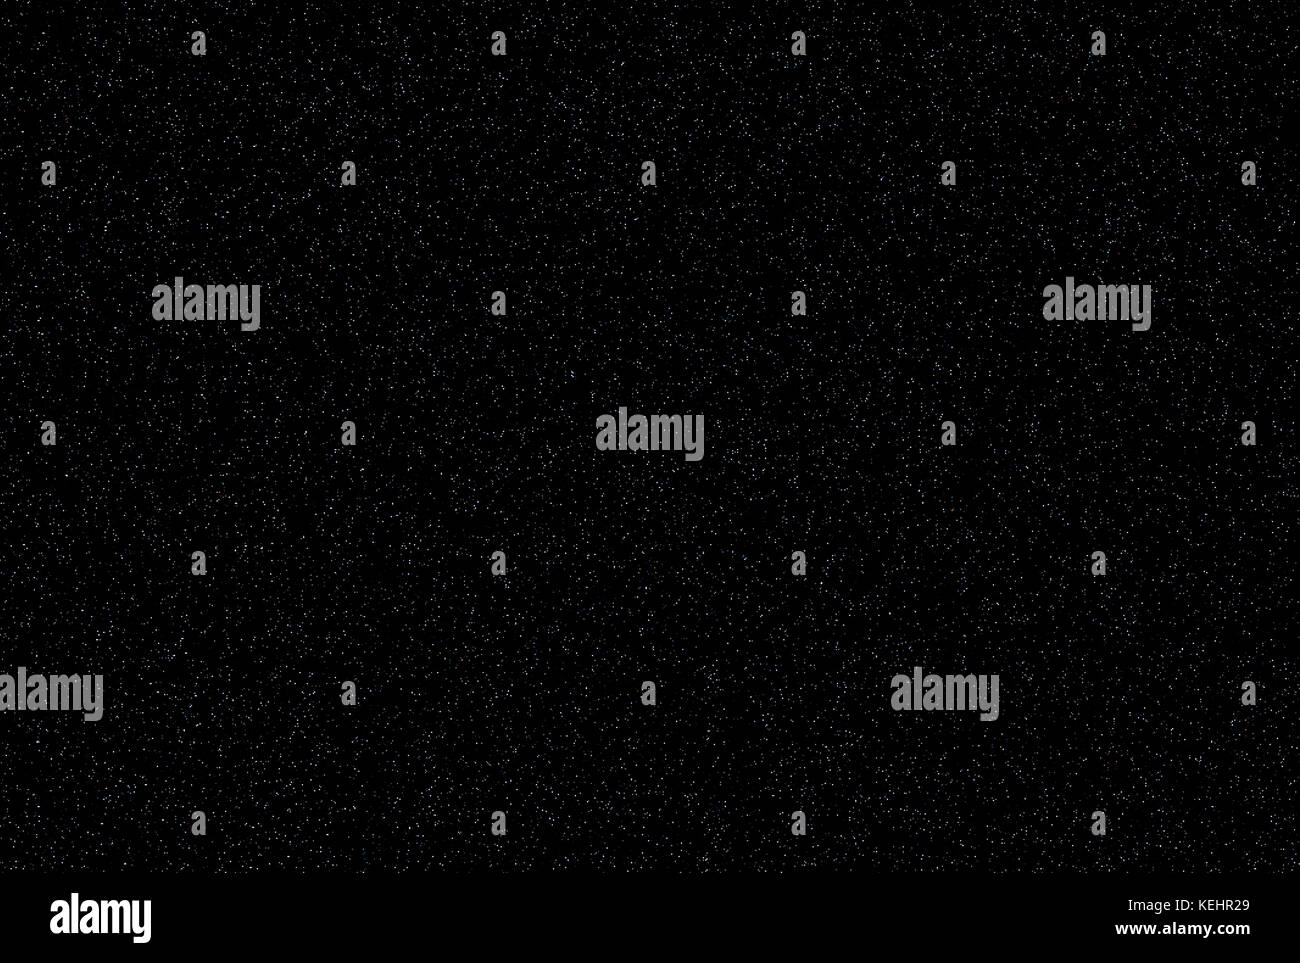 Spazio / universo astronomia sky sfondo astratto: molte stelle di diverse dimensioni e colori che copre scuro sfondo nero. può essere usato come un muro Foto Stock